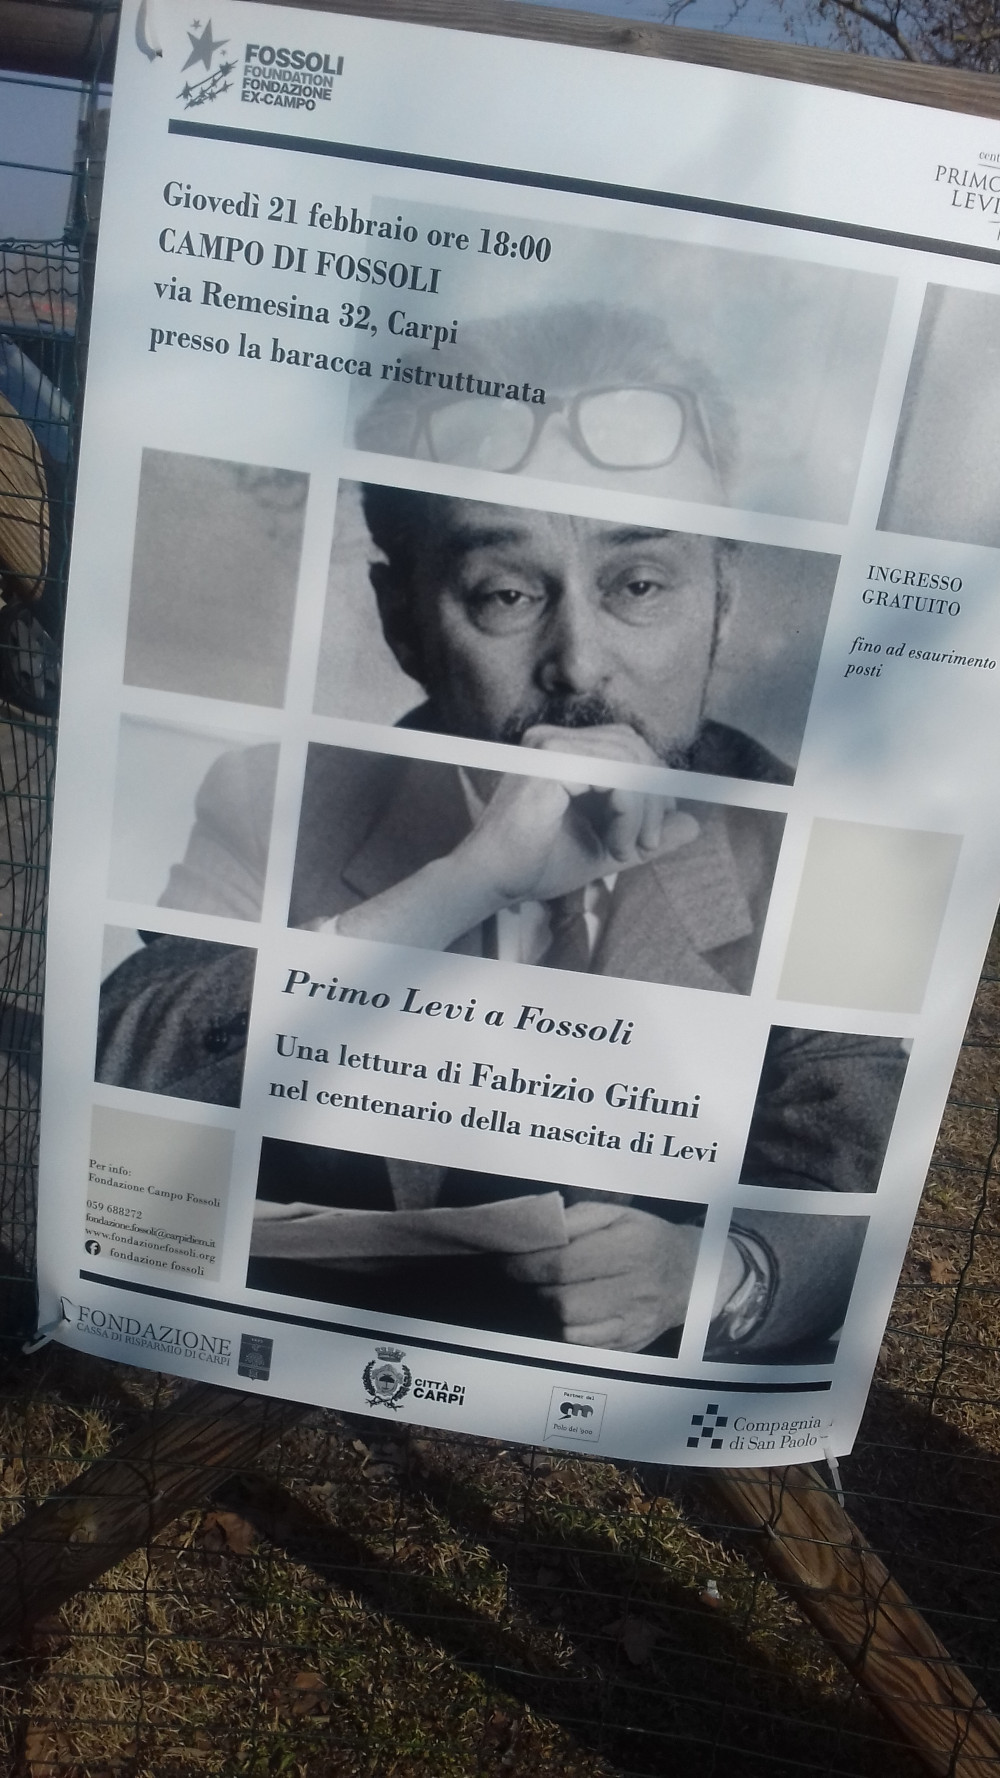 Manifesto affisso sul cancello del campo di Fossoli (2019)